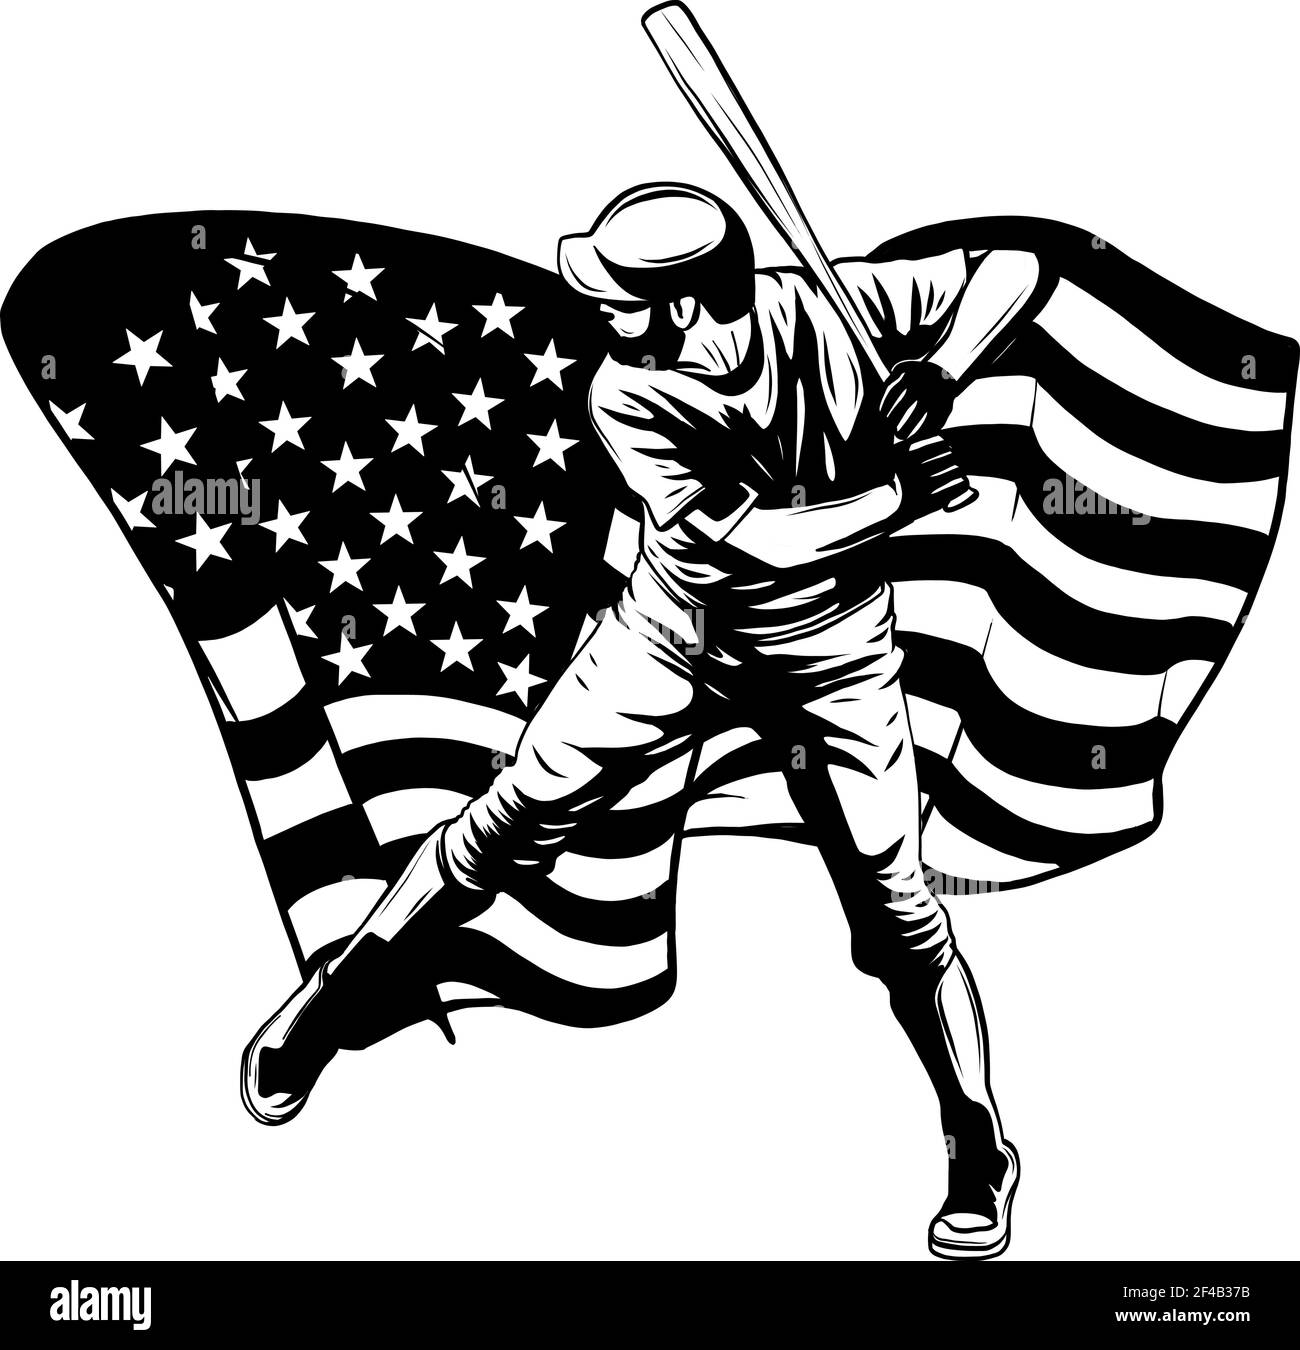 Dessinez en noir et blanc d'un joueur de baseball avec un américain illustration du vecteur drapeau Illustration de Vecteur